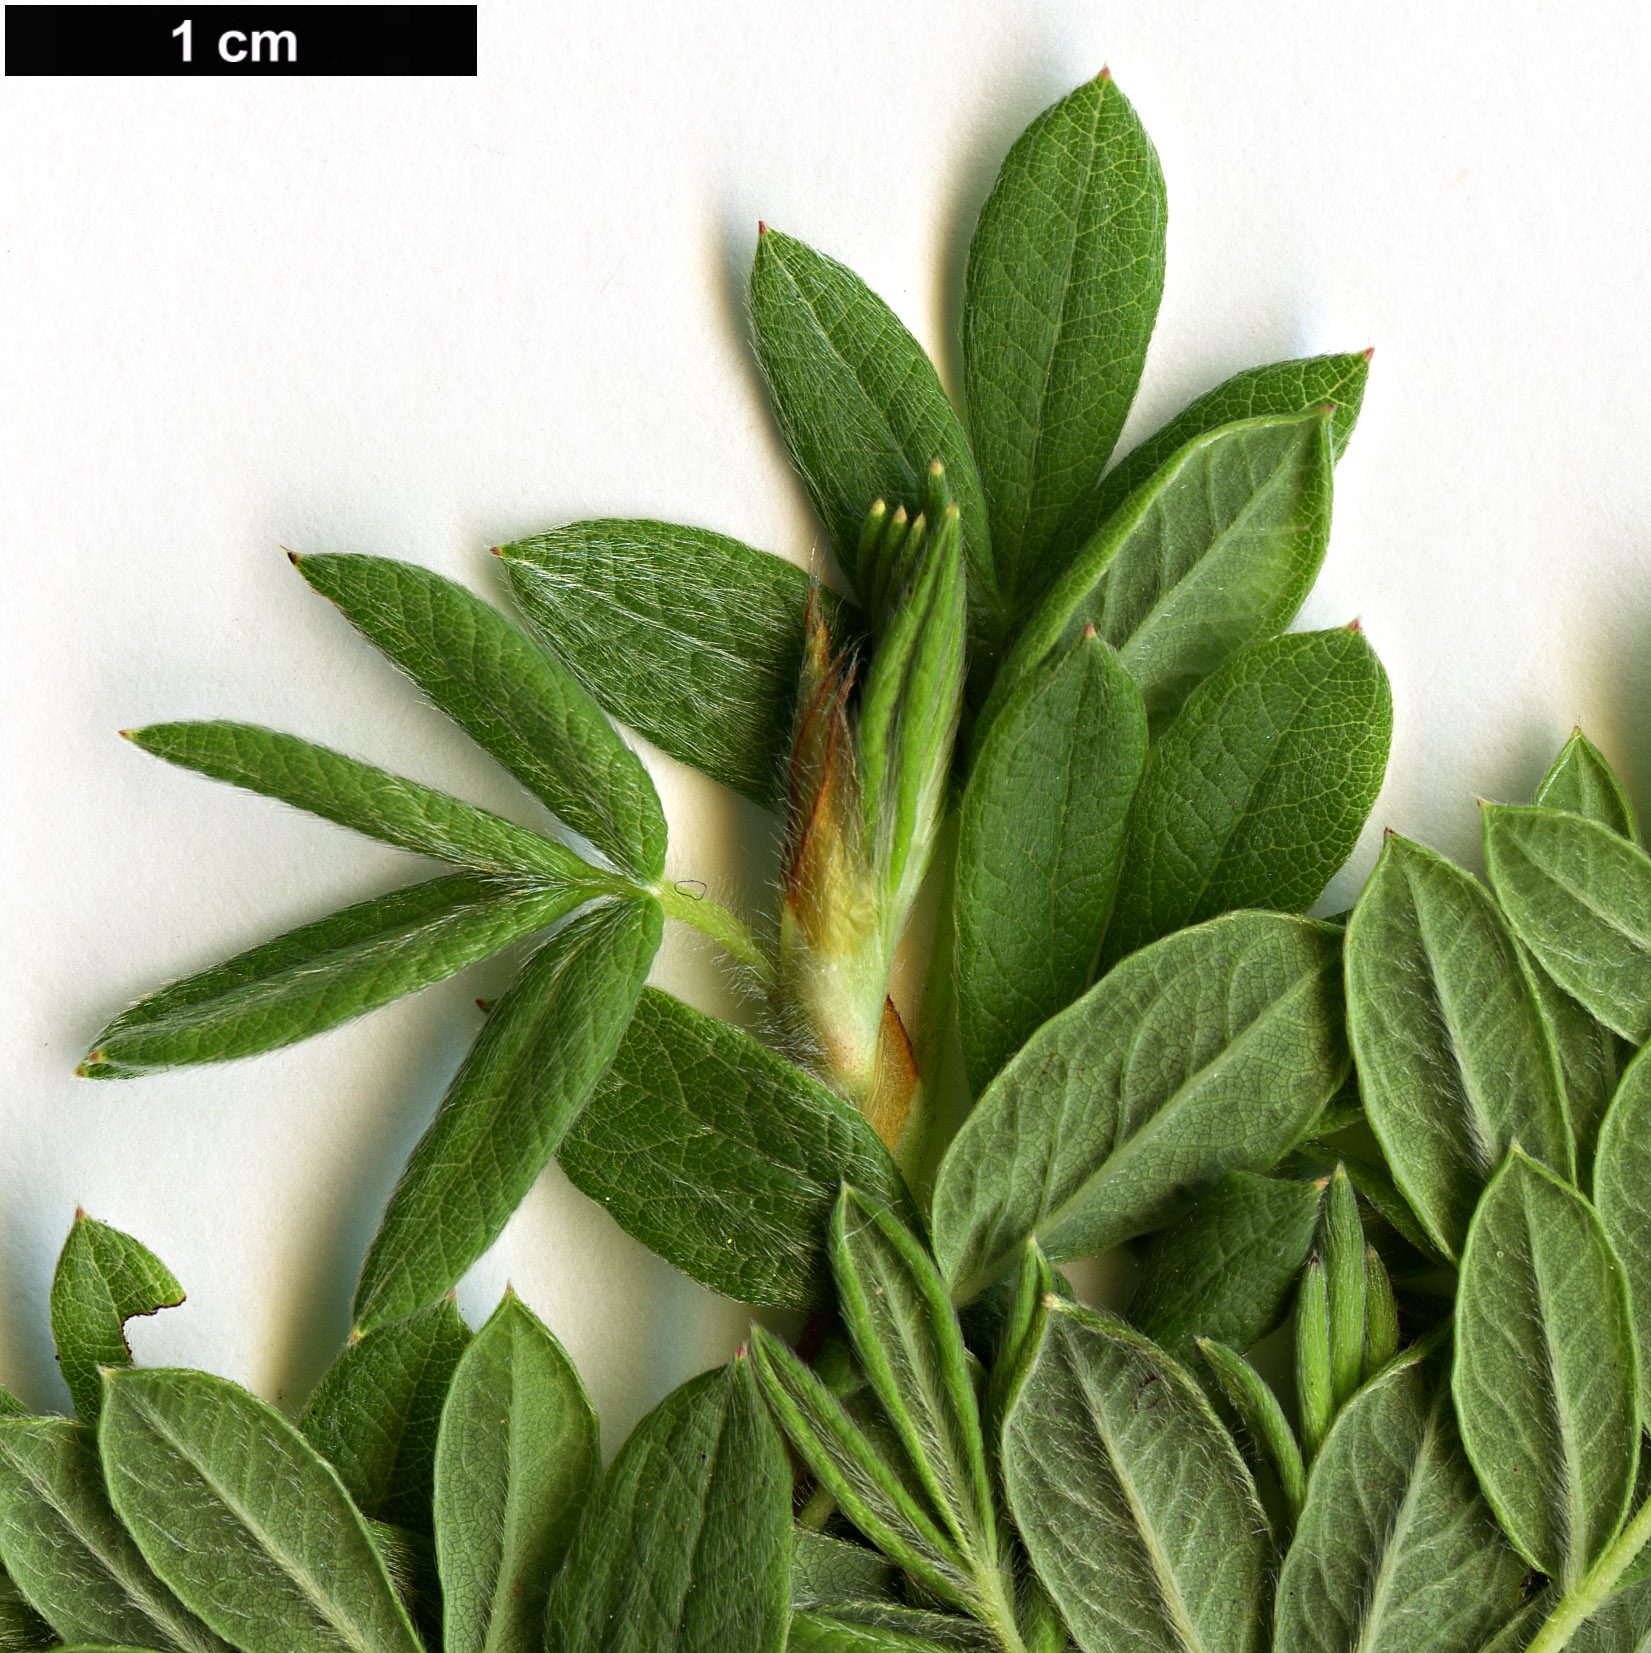 High resolution image: Family: Rosaceae - Genus: Potentilla - Taxon: fruticosa